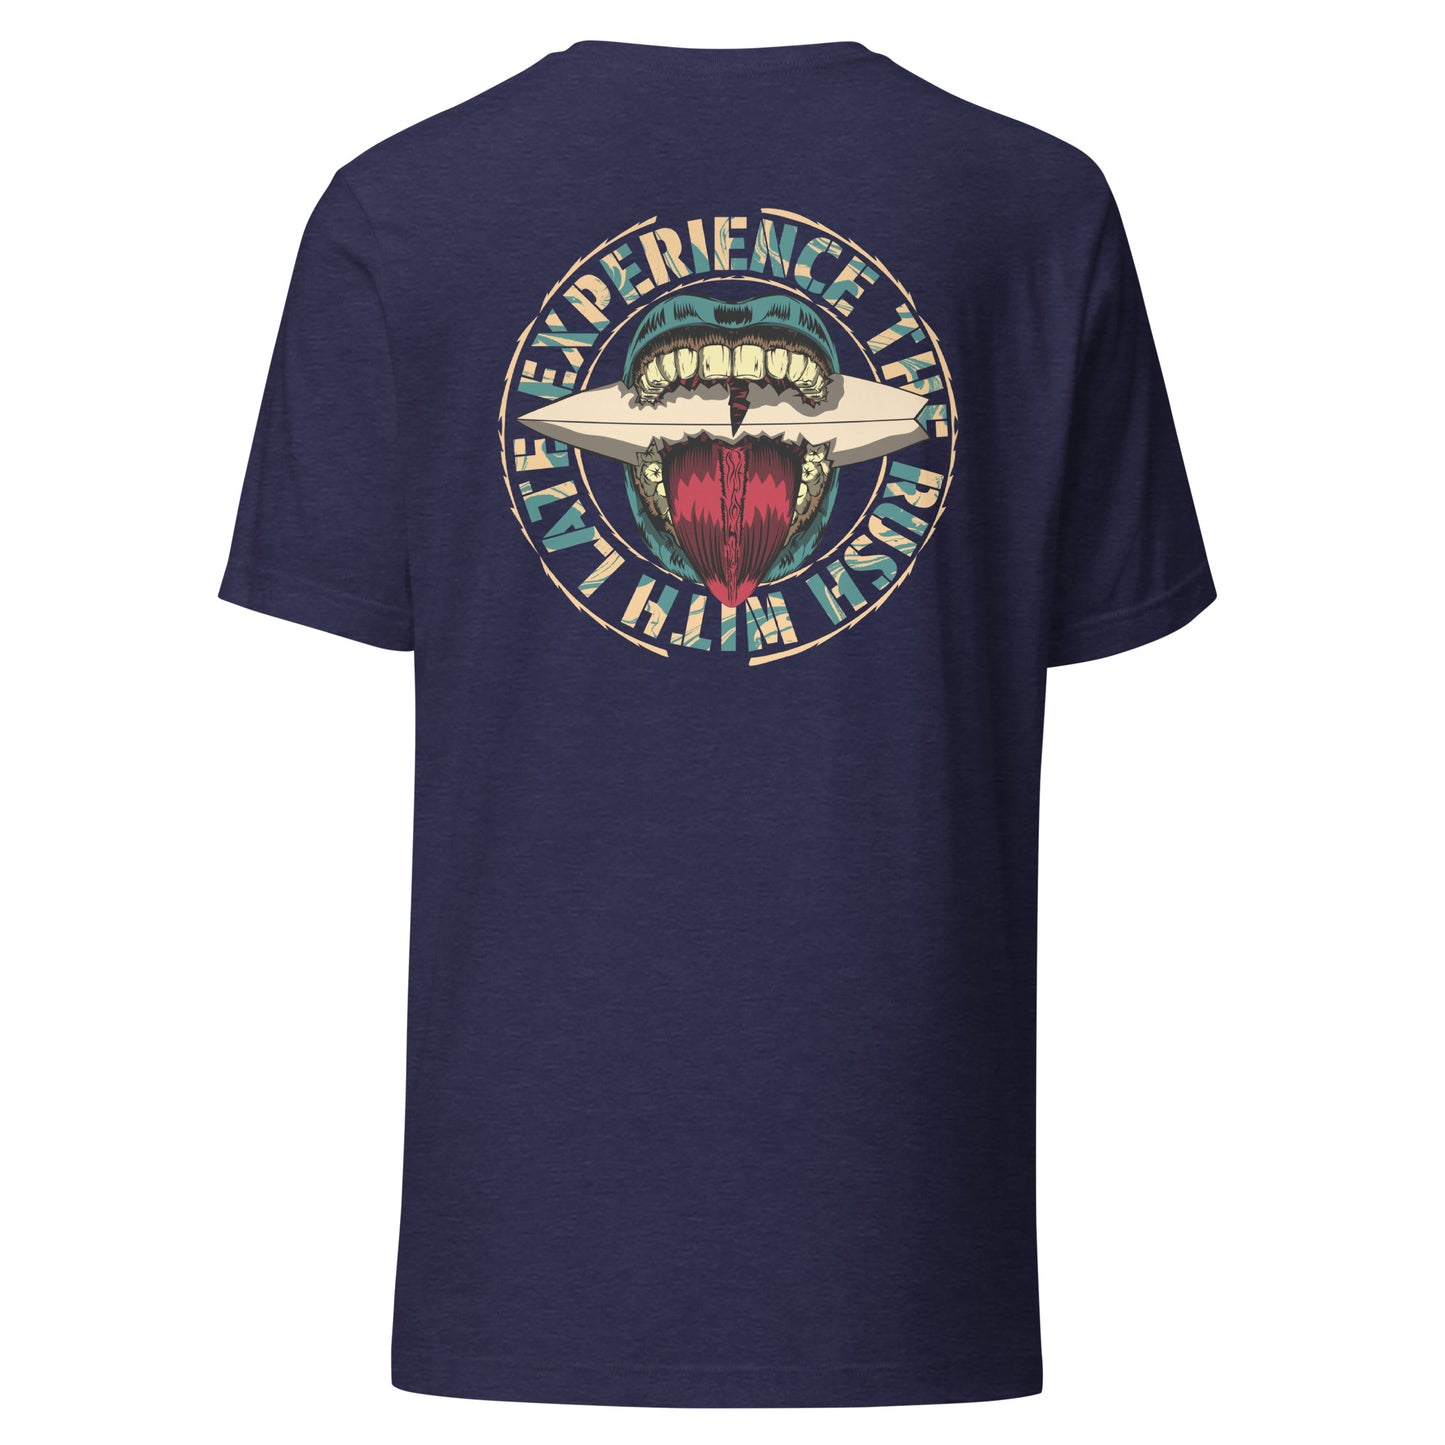 T-Shirt de surfeur style santacruz skateboarding et planche de surf texte experience the rush Late t-shirt dos couleur navy heather